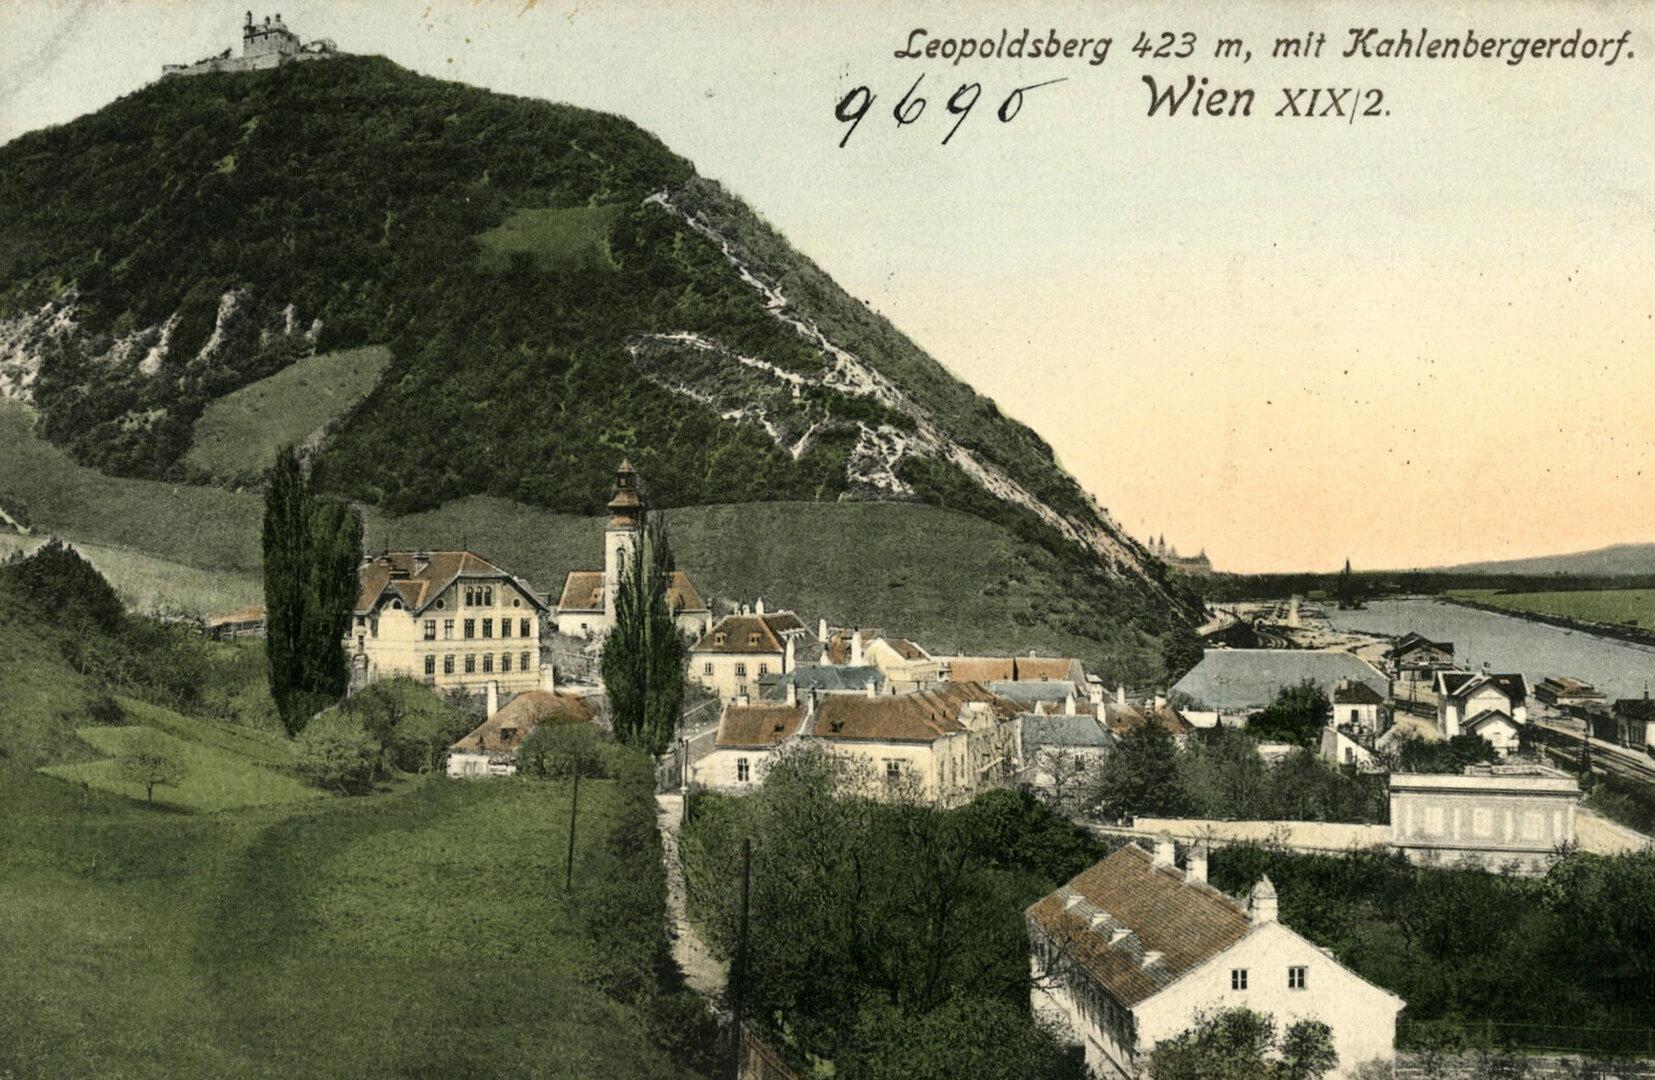 Zeitreise: Neues Buch widmet sich Anekdoten über Wiens Berge